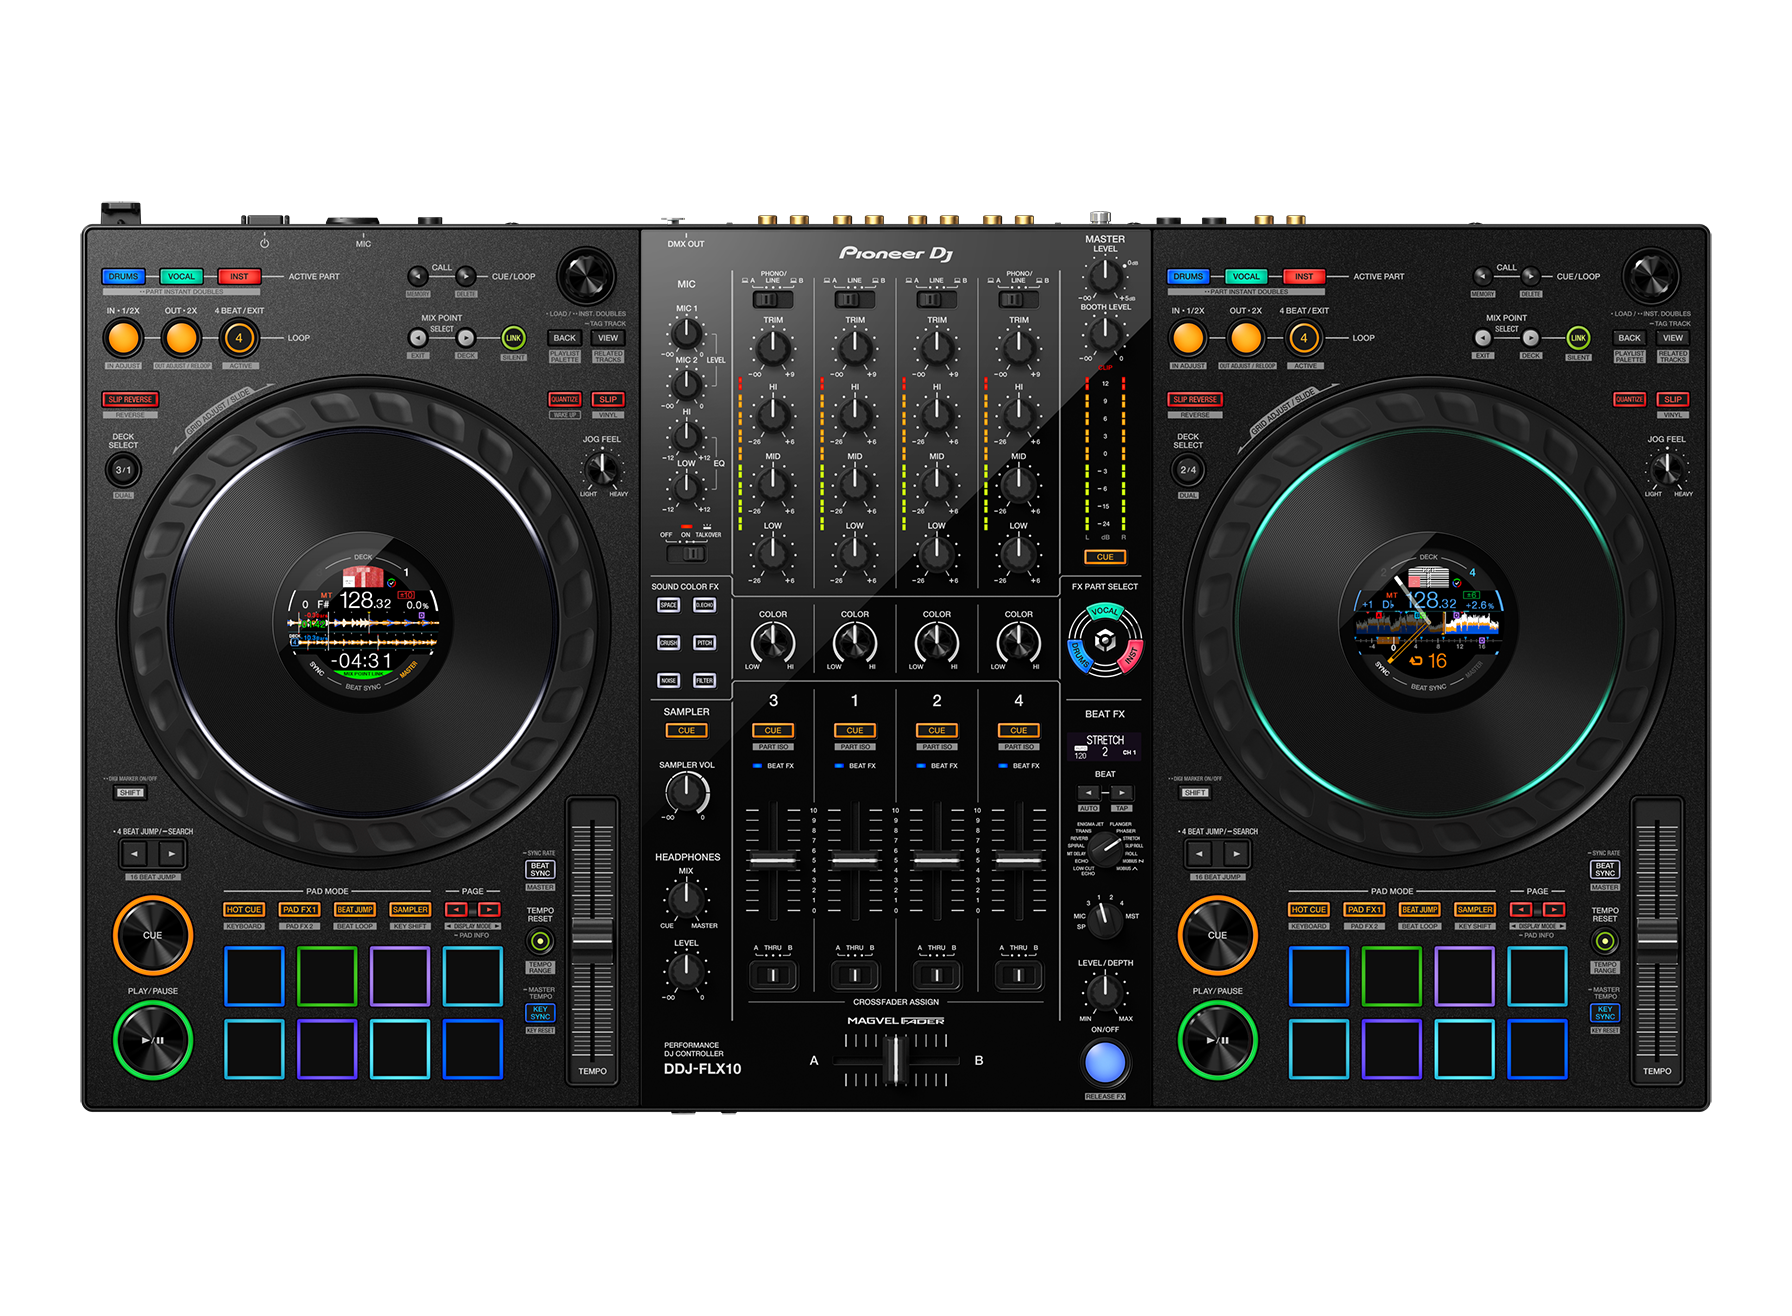 Hlavní obrázek DJ kontrolery PIONEER DJ DDJ-FLX10